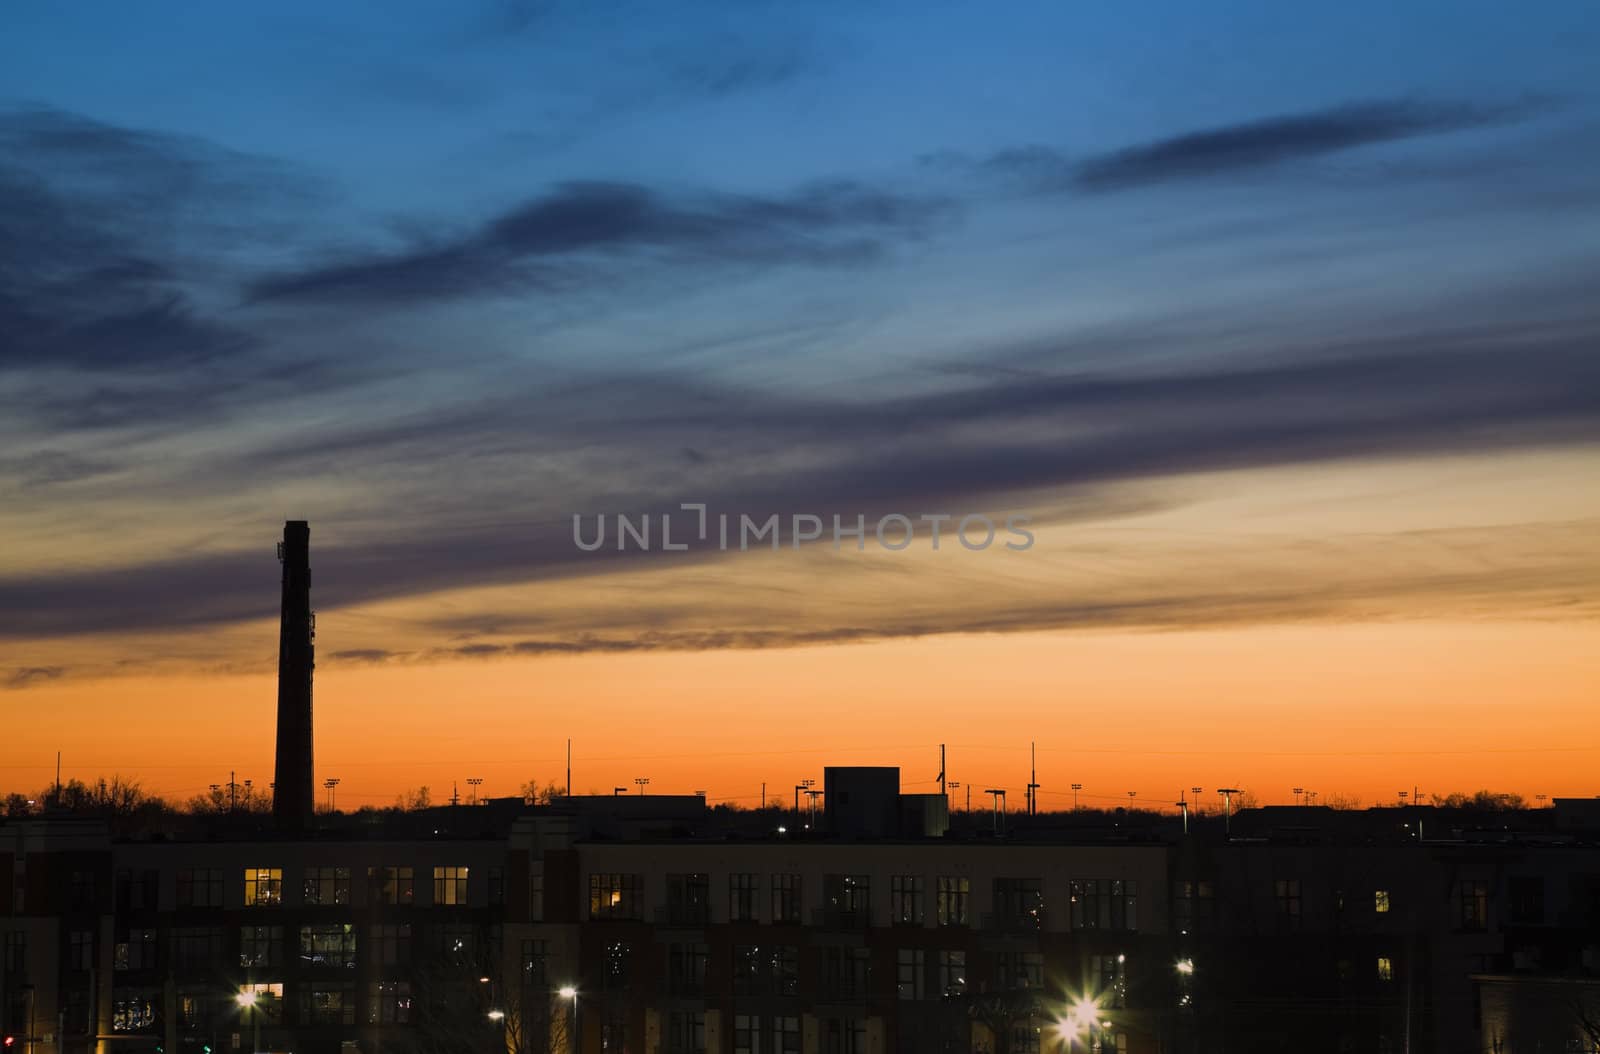 City sunset - seen in Lexington, Kentucky.